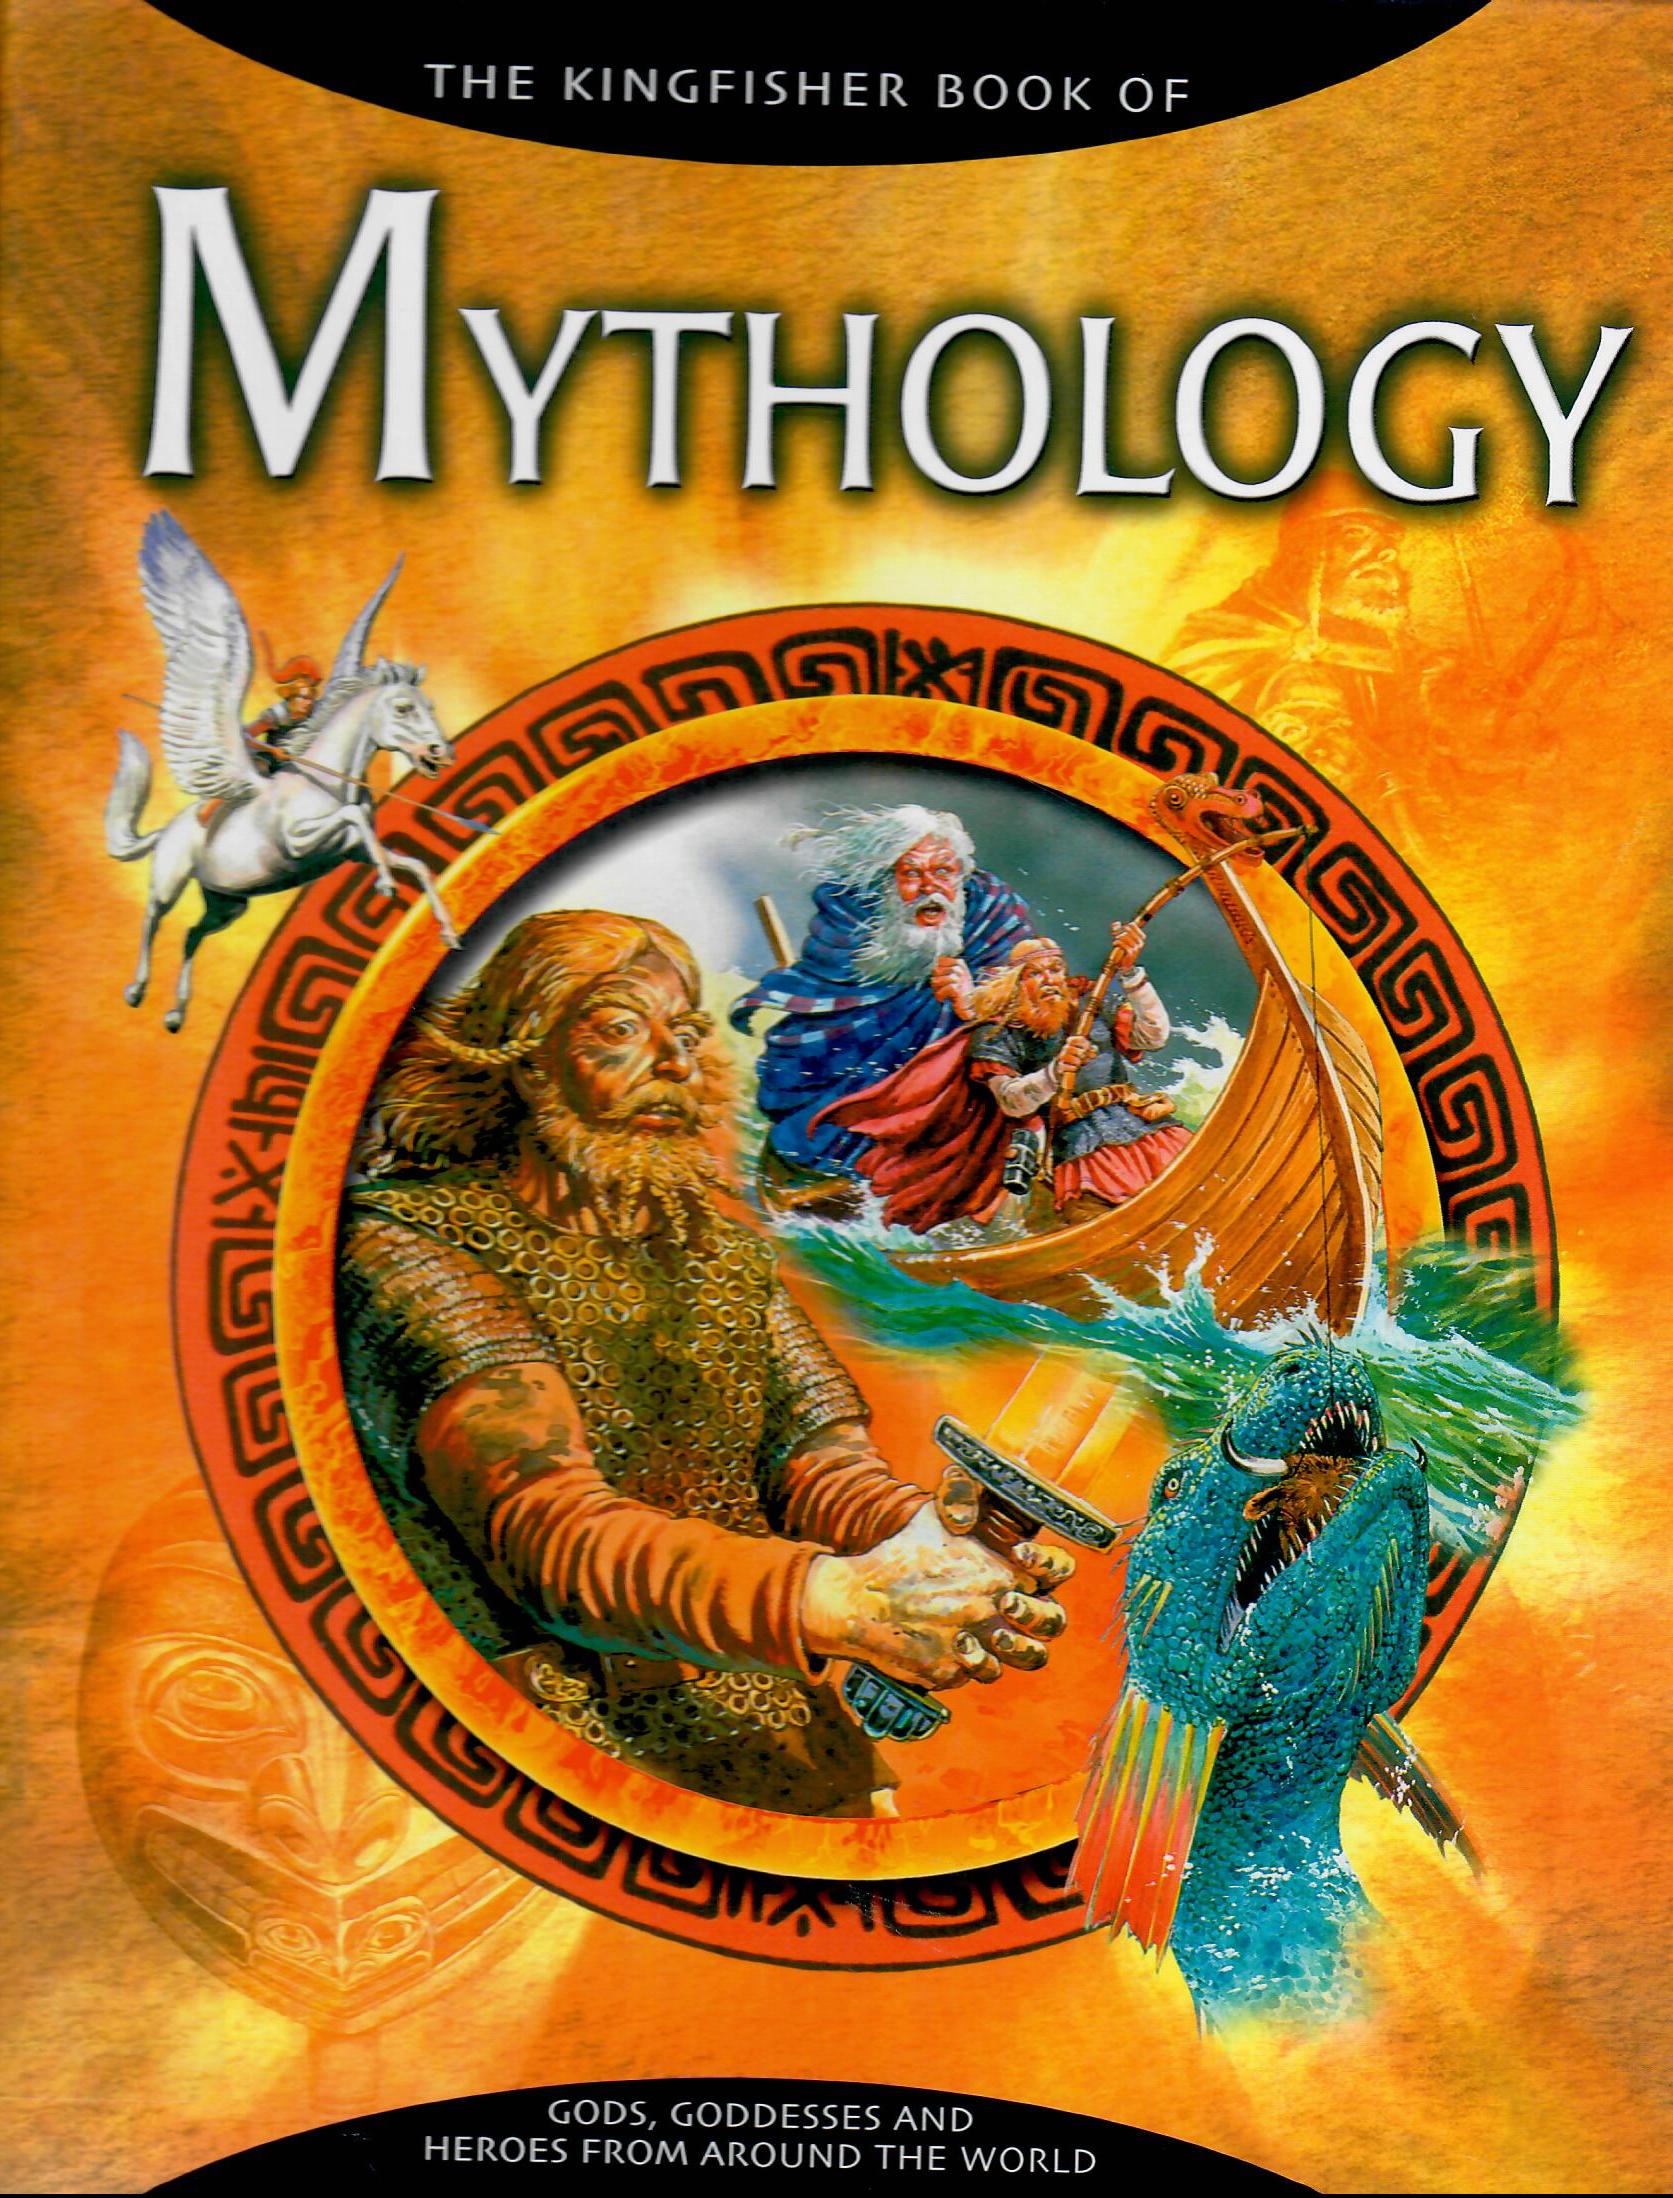 THE KINGFISHER BOOK OF MYTHOLOGY